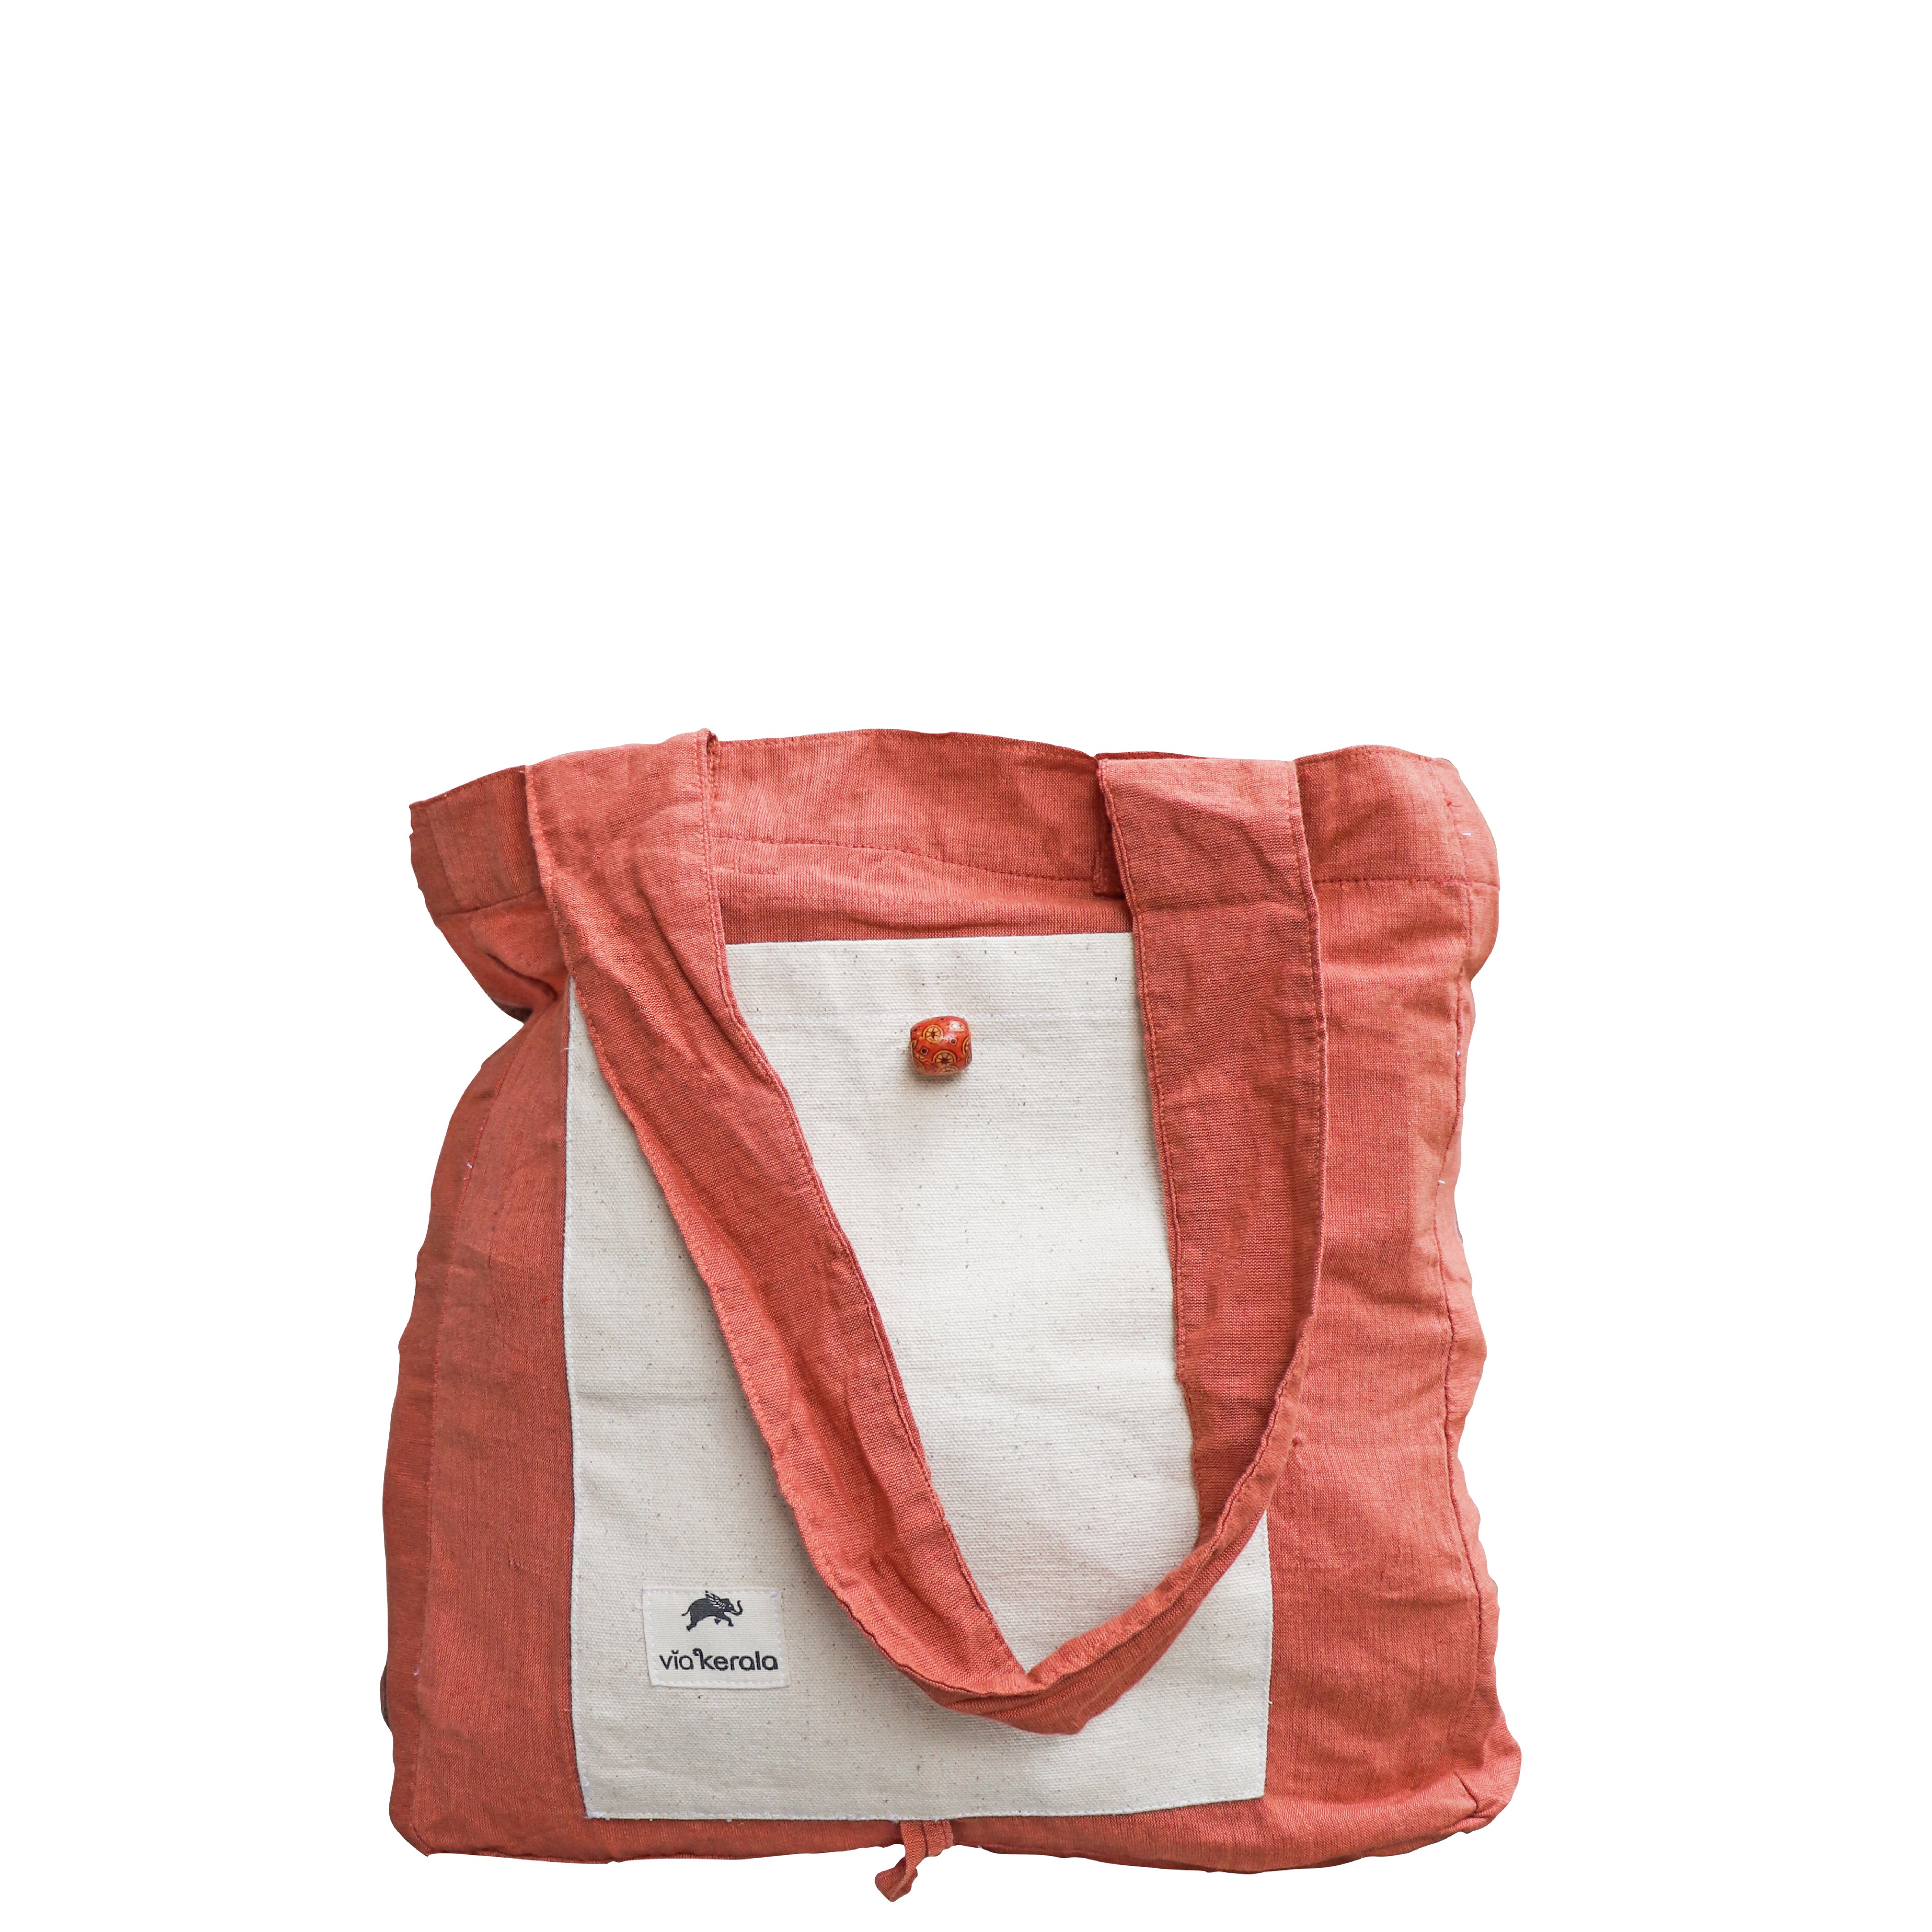 Buy Any Bag Via Telfar Bag Security Program III | Hypebeast